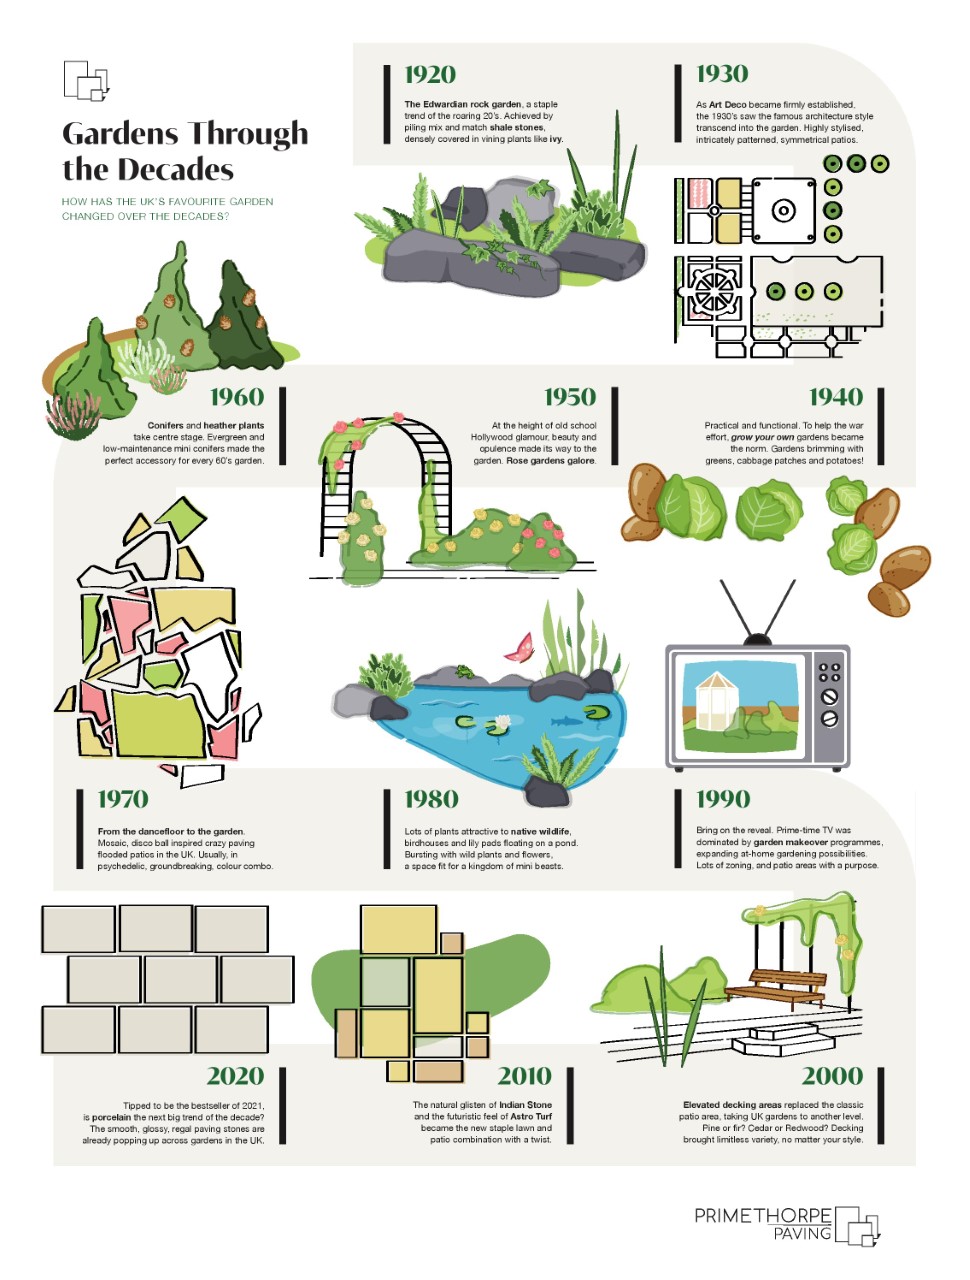 Garden through the decades infographic